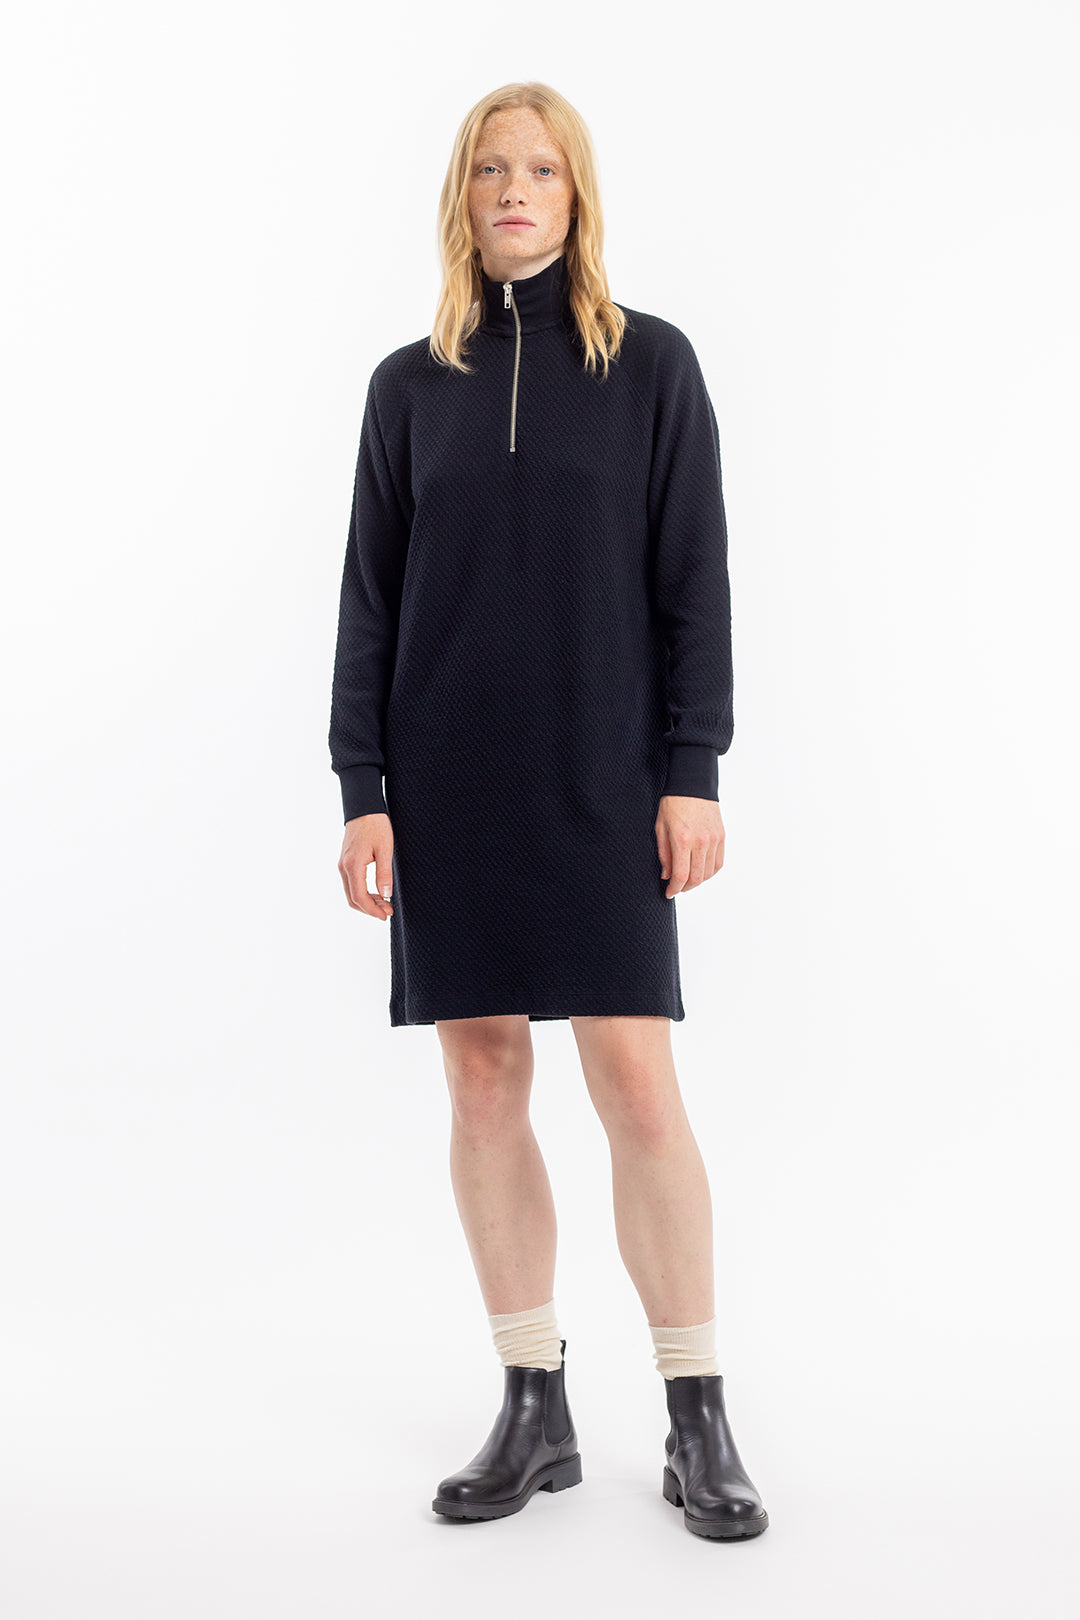 Schwarzes, Sweatshirt-Kleid aus 100% Bio-Baumwolle von Rotholz